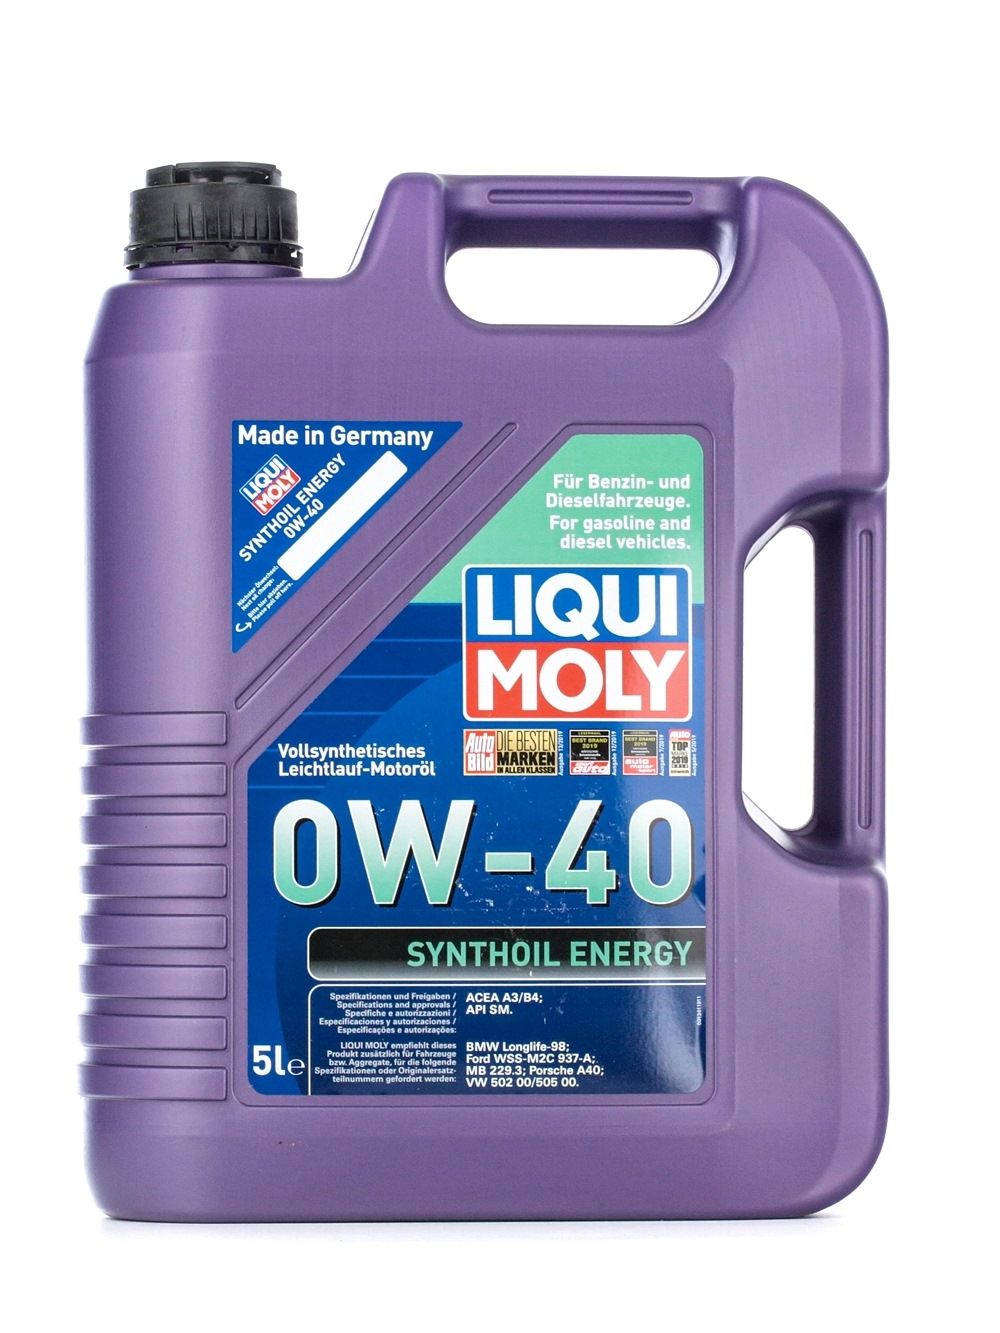 LIQUI MOLY Synthoil Energy 1361 HONDA Auto Öl Kosten und Erfahrung